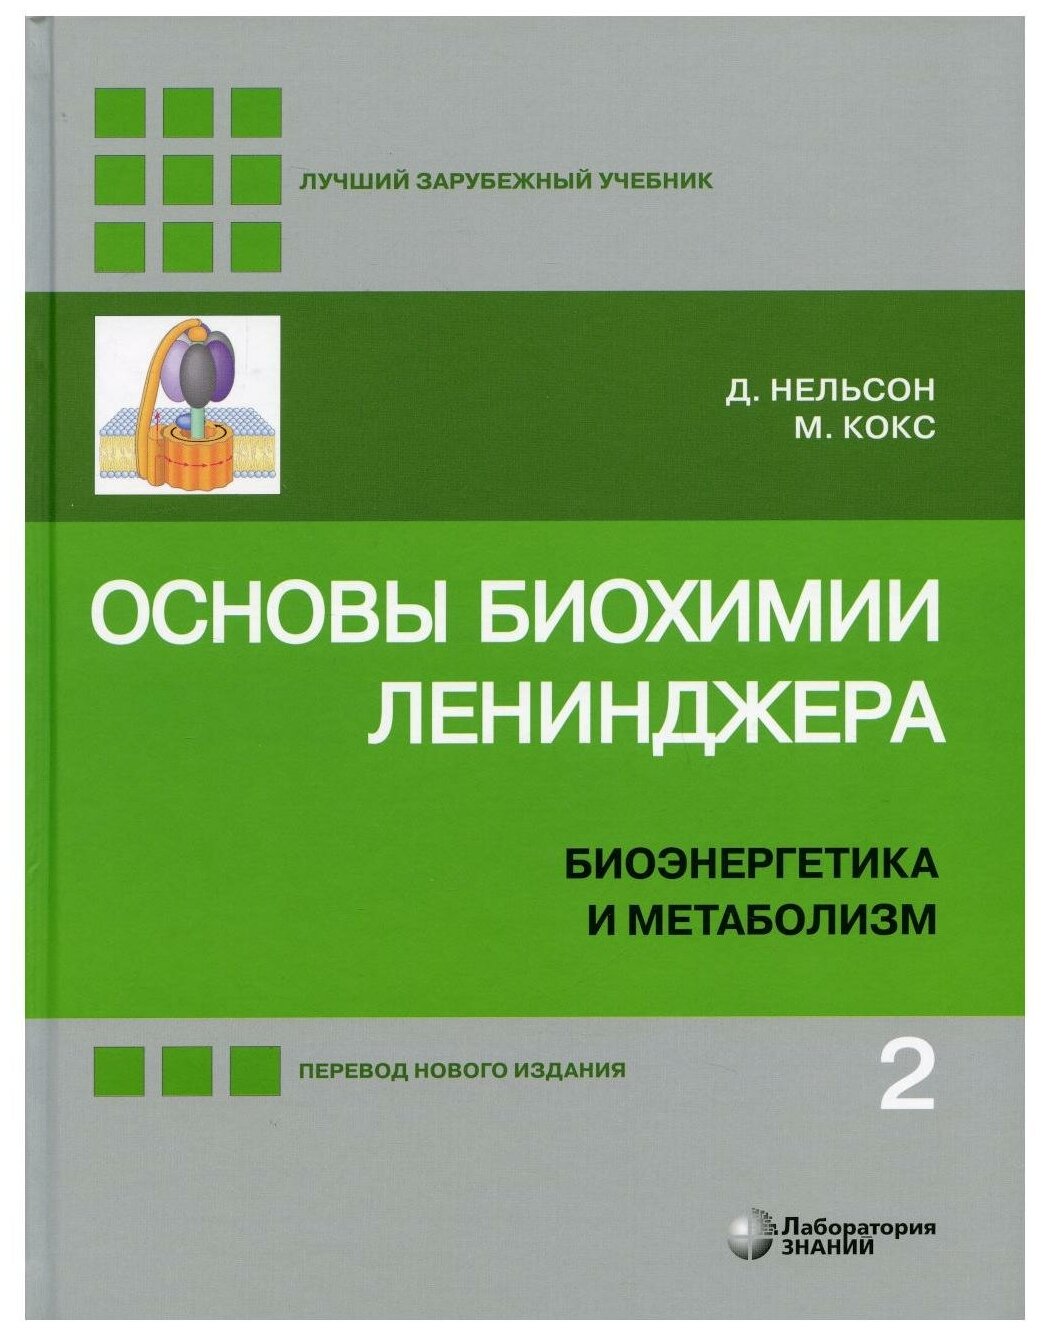 Основы биохимии Ленинджера. В 3 т. Т. 2: Биоэнергетика и метаболизм. 5-е изд, перераб. и доп